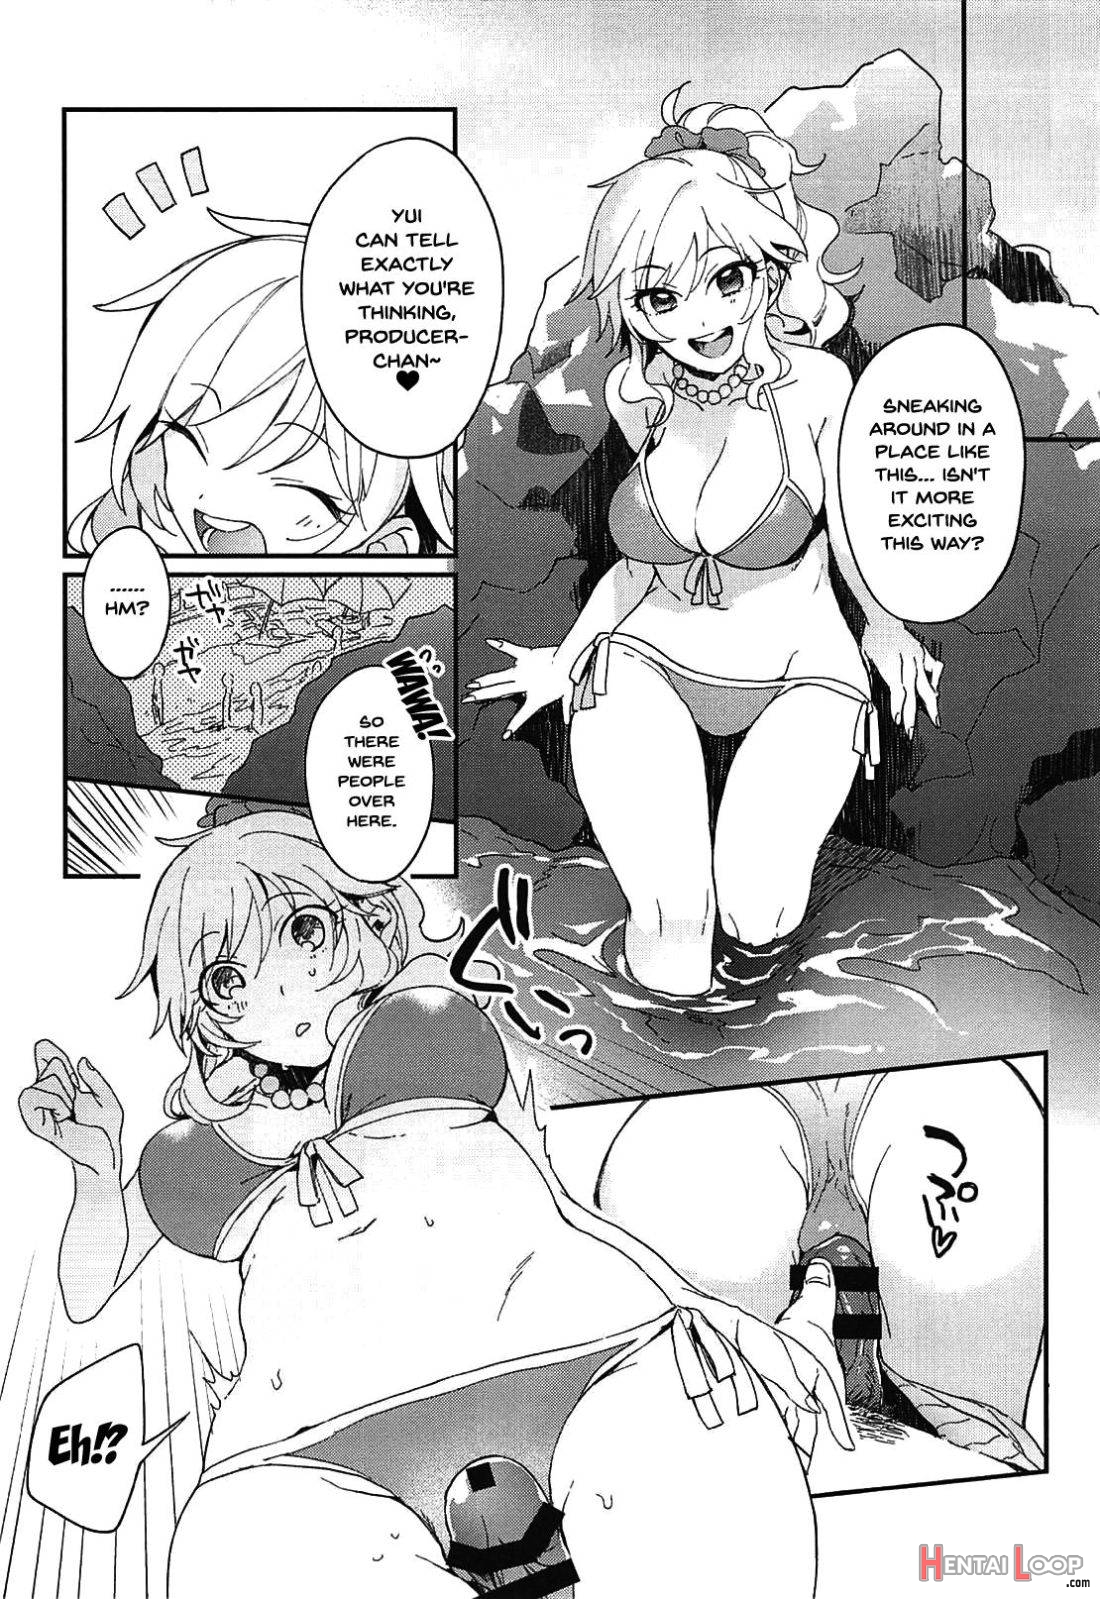 Yui to Umi Iko! page 7